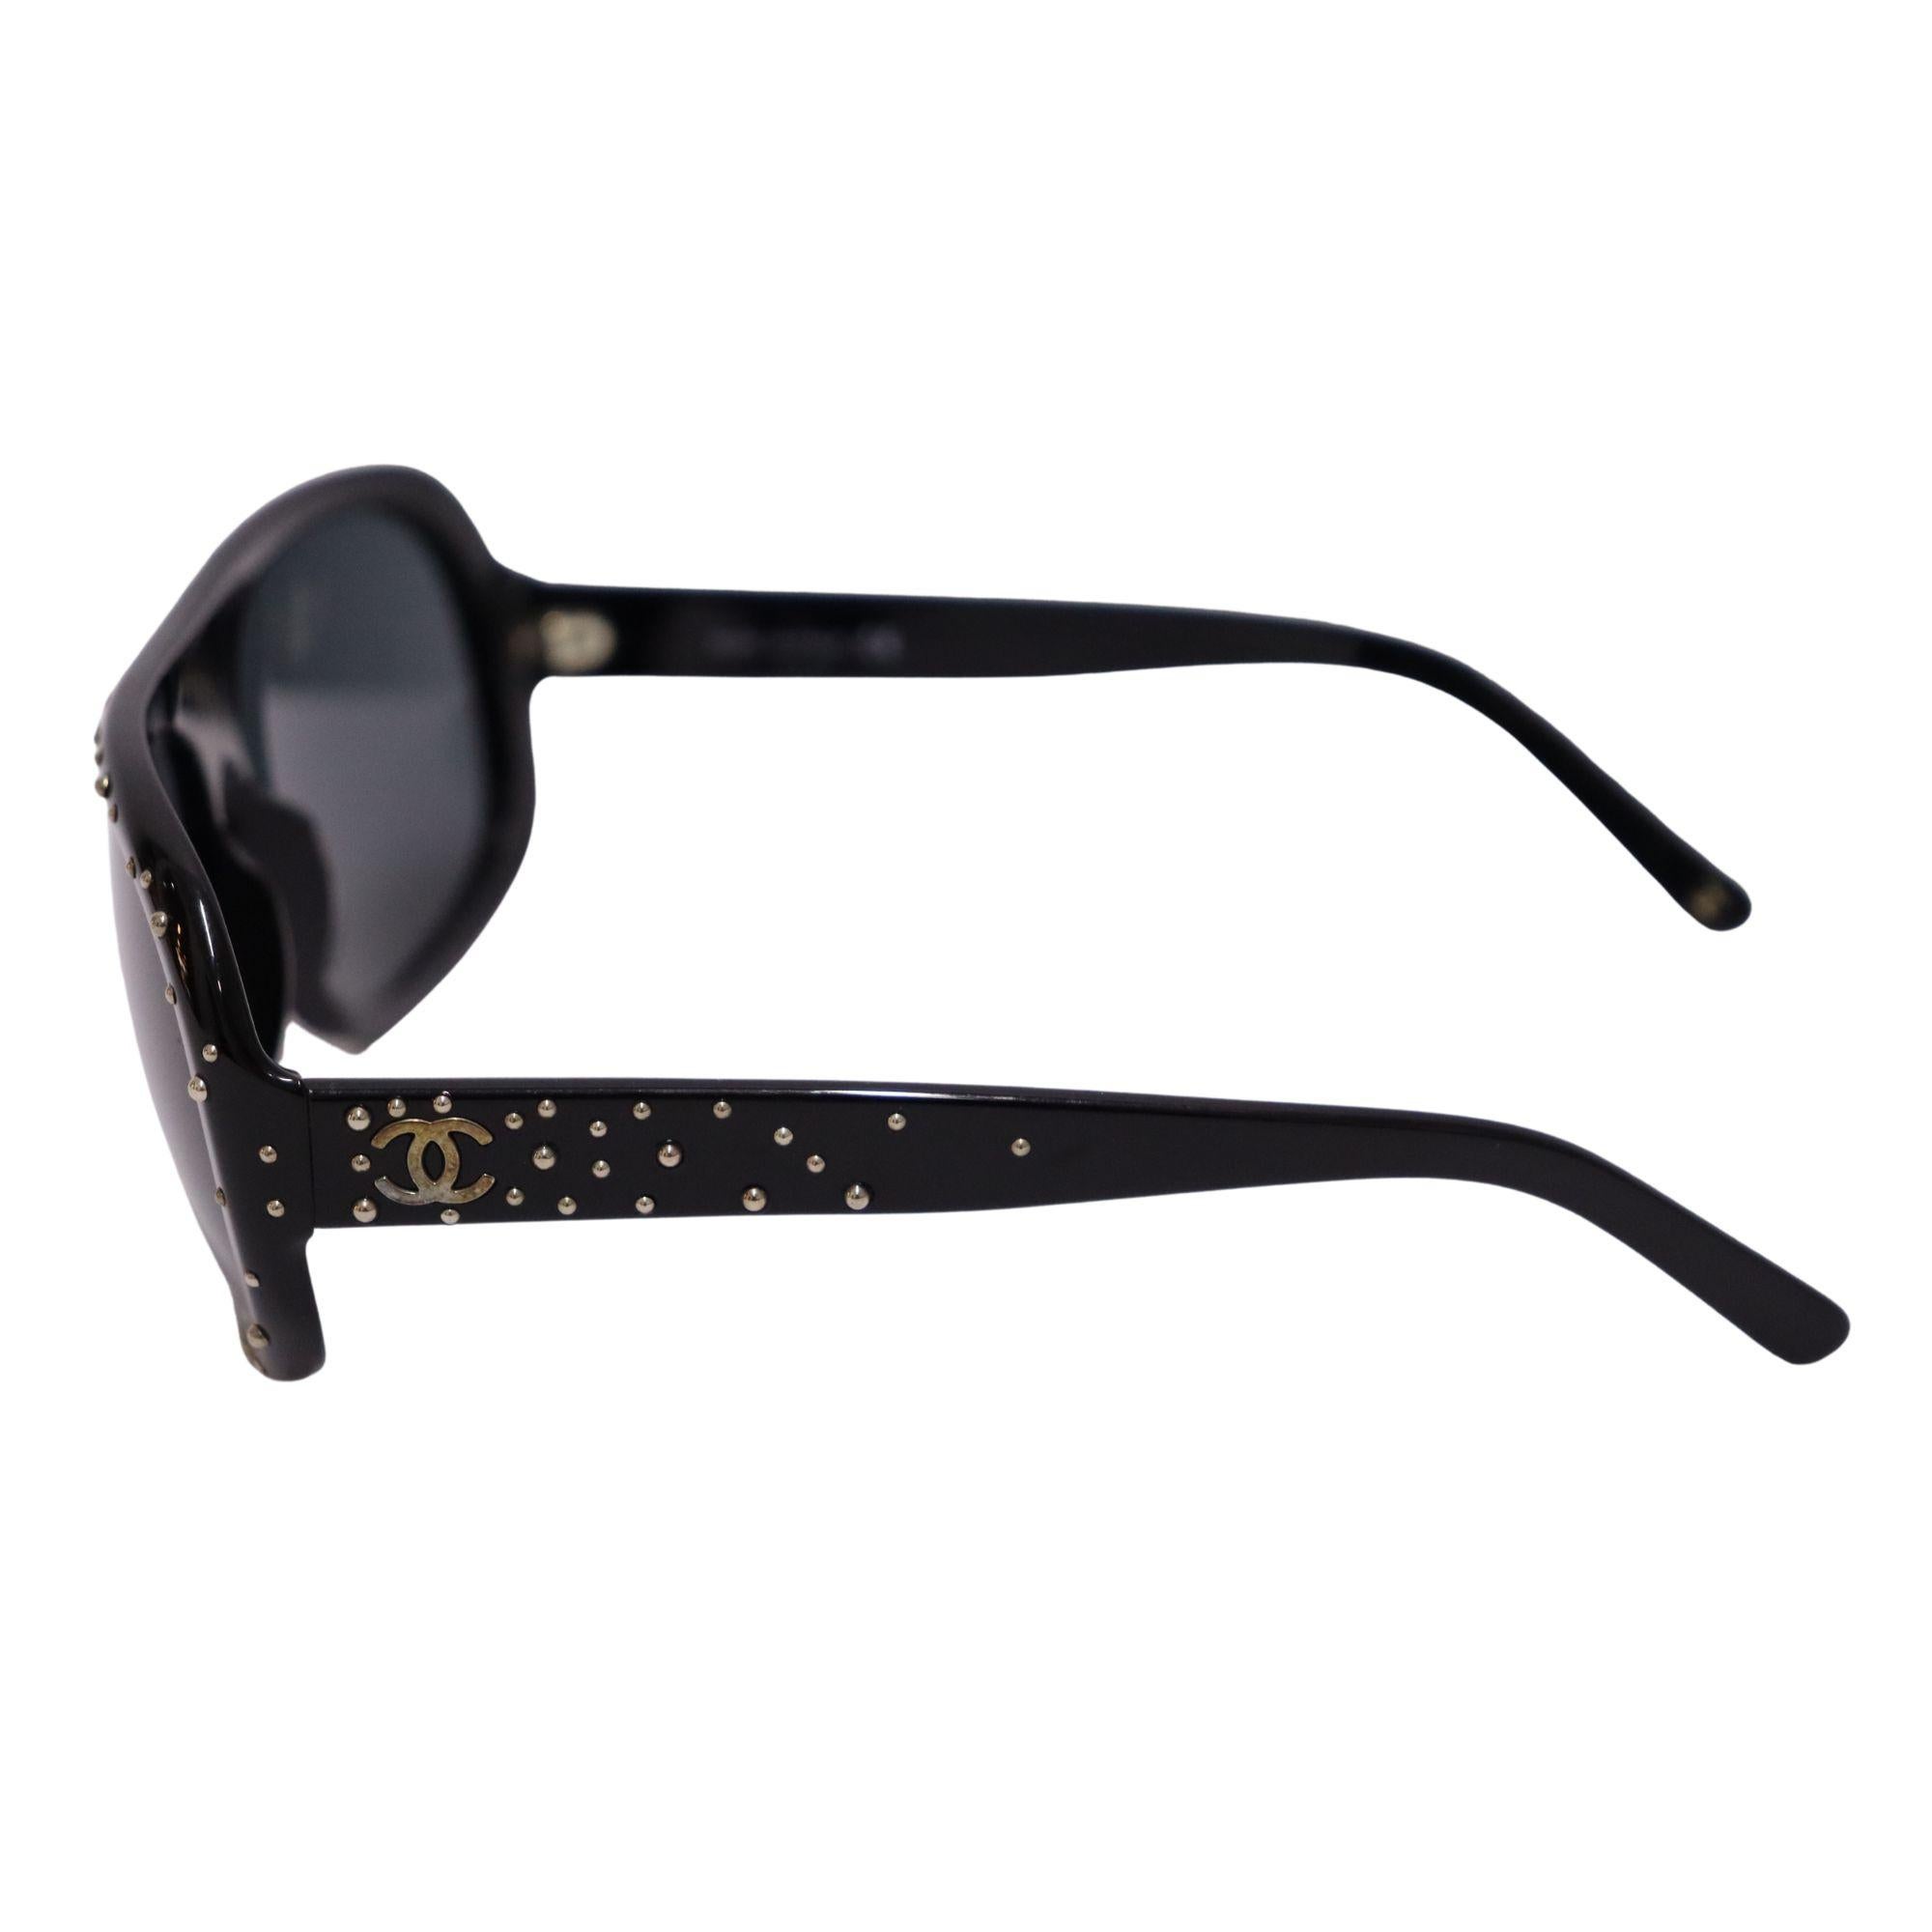 Schwarze Chanel Aviator-Sonnenbrille aus Acetat mit getönten Gläsern, Strassverzierungen am Rahmen und an den Bügeln sowie CC-Logos.
Größe: 31/50/145
Gesamtzustand: Sehr gut.
Innerer Zustand: Gebrauchsspuren.
Äußerer Zustand: Hardware-Farbabfall auf